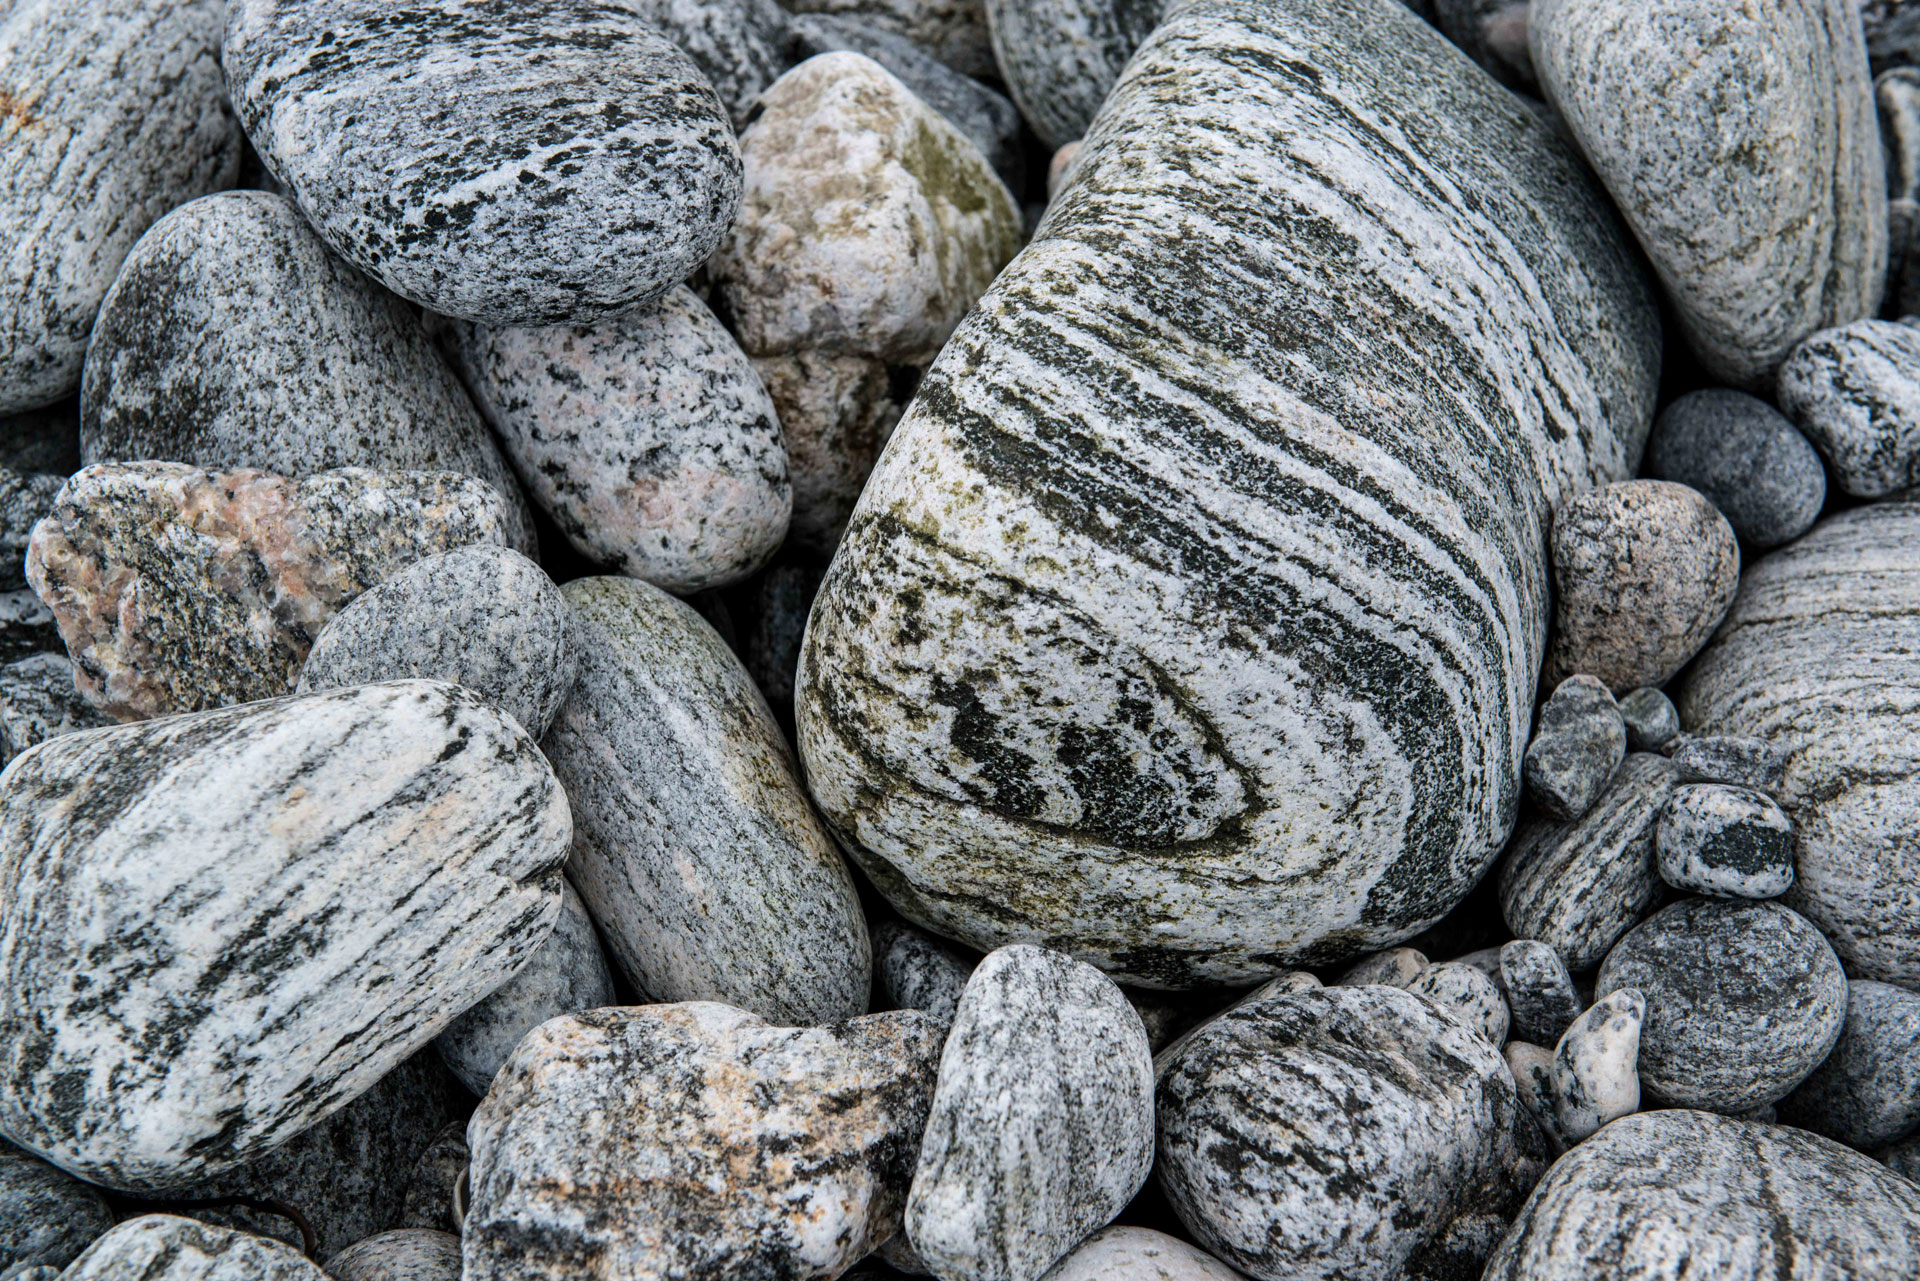 harris tweed authority beach boulders janet miles 